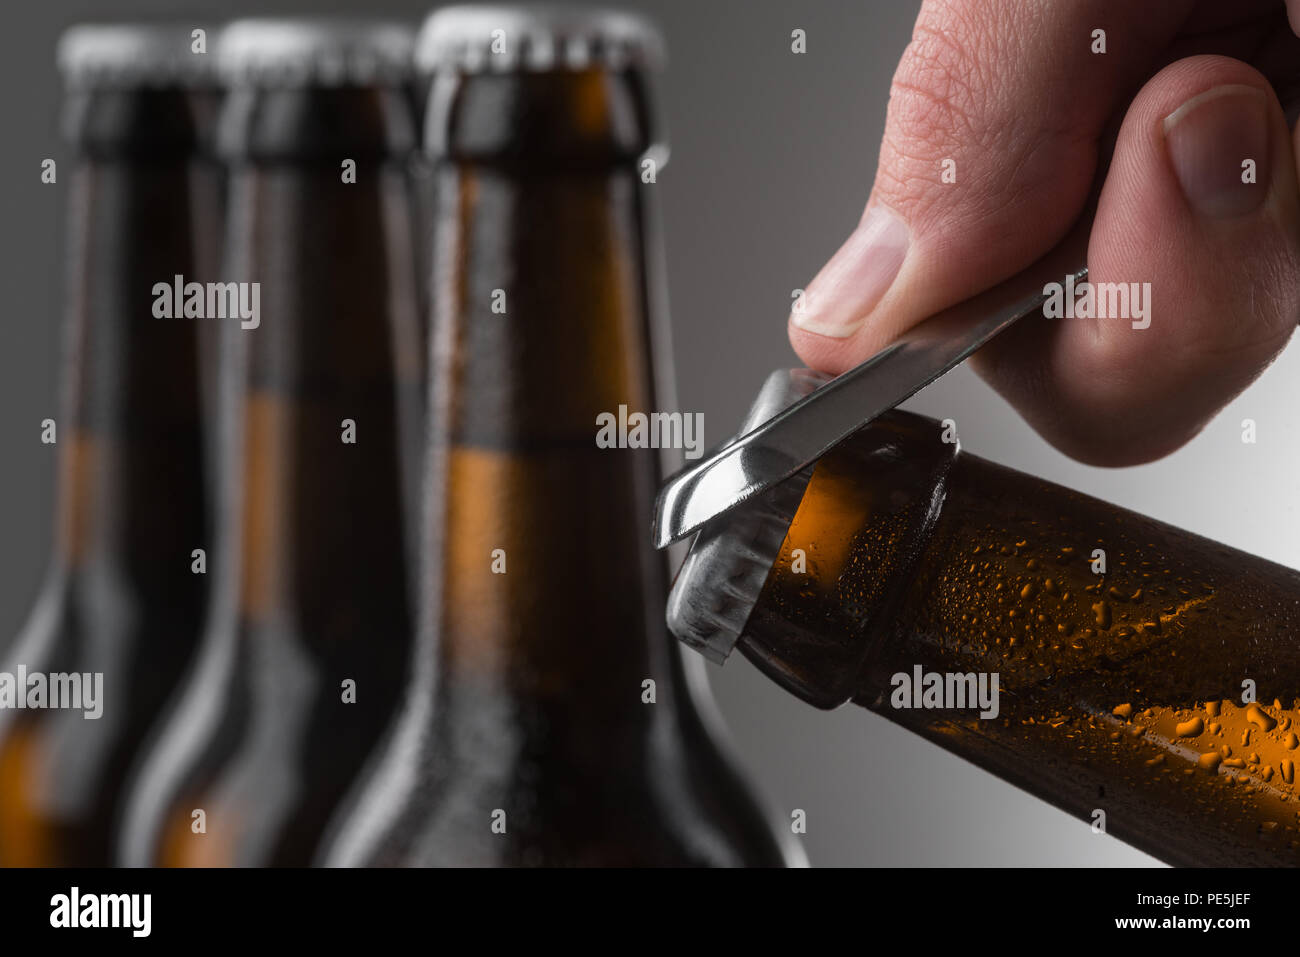 Männliche Hand öffnen Bier Flasche mit Metall Flaschenöffner. Tröpfchen in  braunen Flaschen kaltes Bier. Selektive konzentrieren Stockfotografie -  Alamy